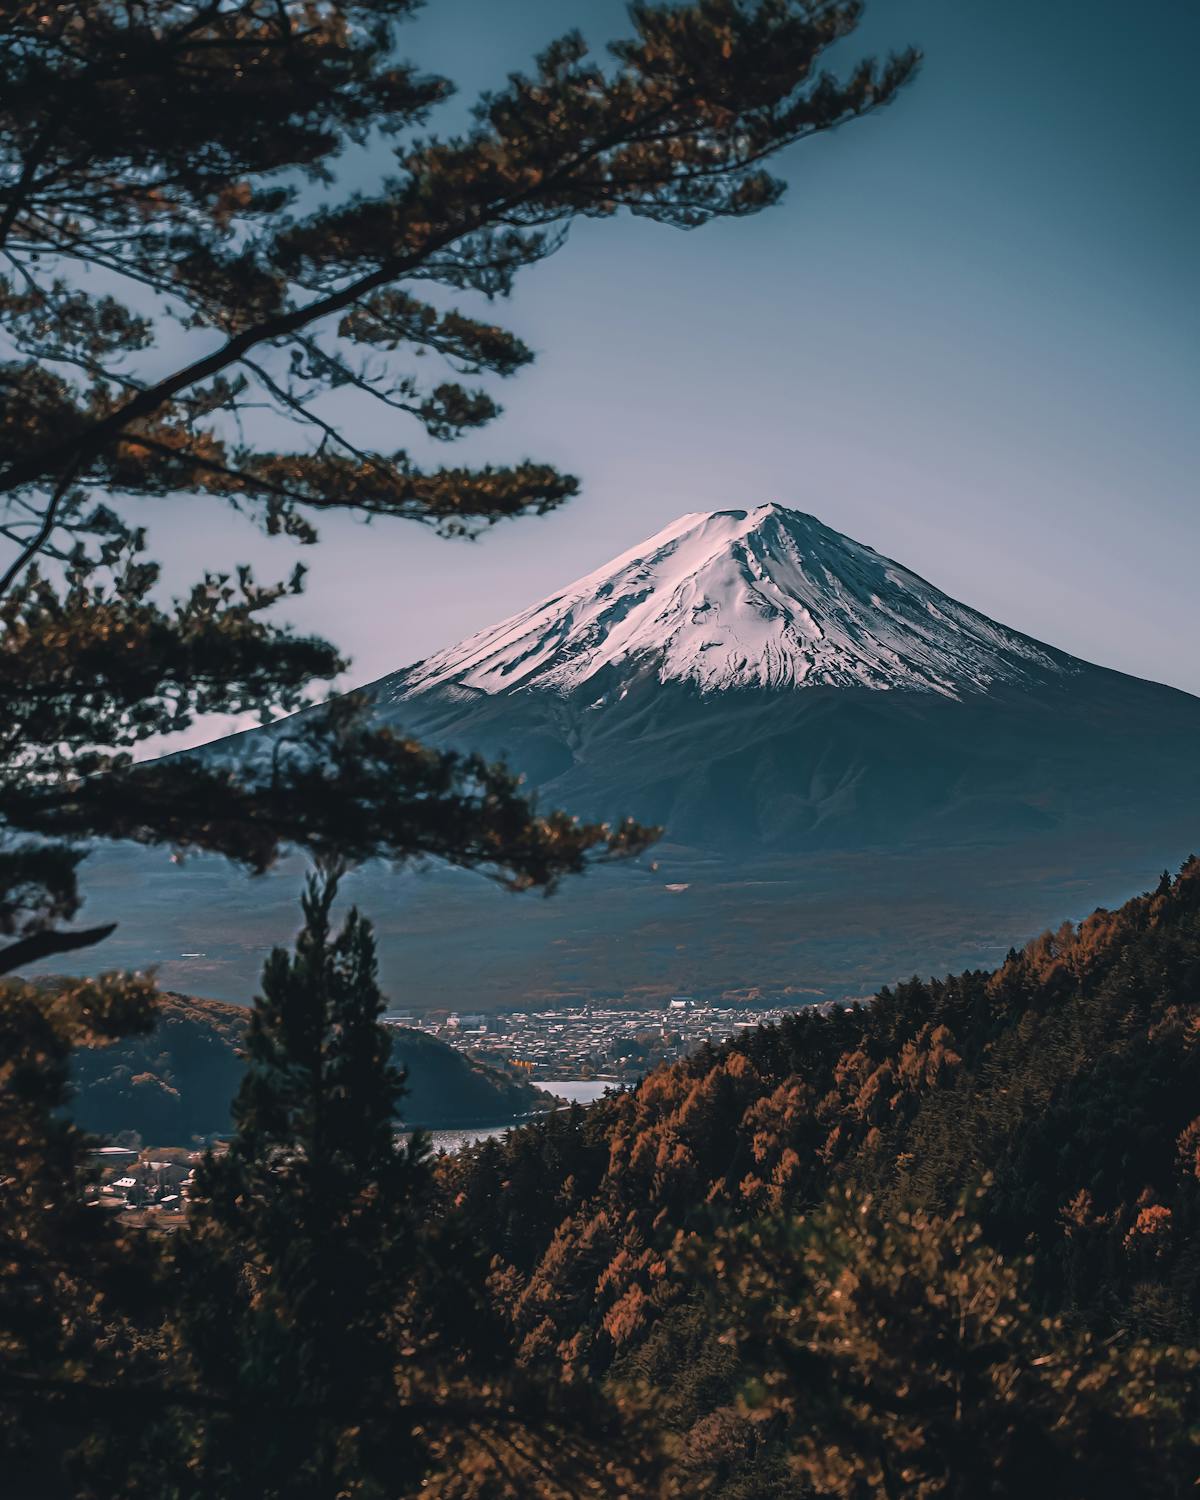 Snow Capped Mountain/Mt. Fuji (credit:  K K, Pexels.com)